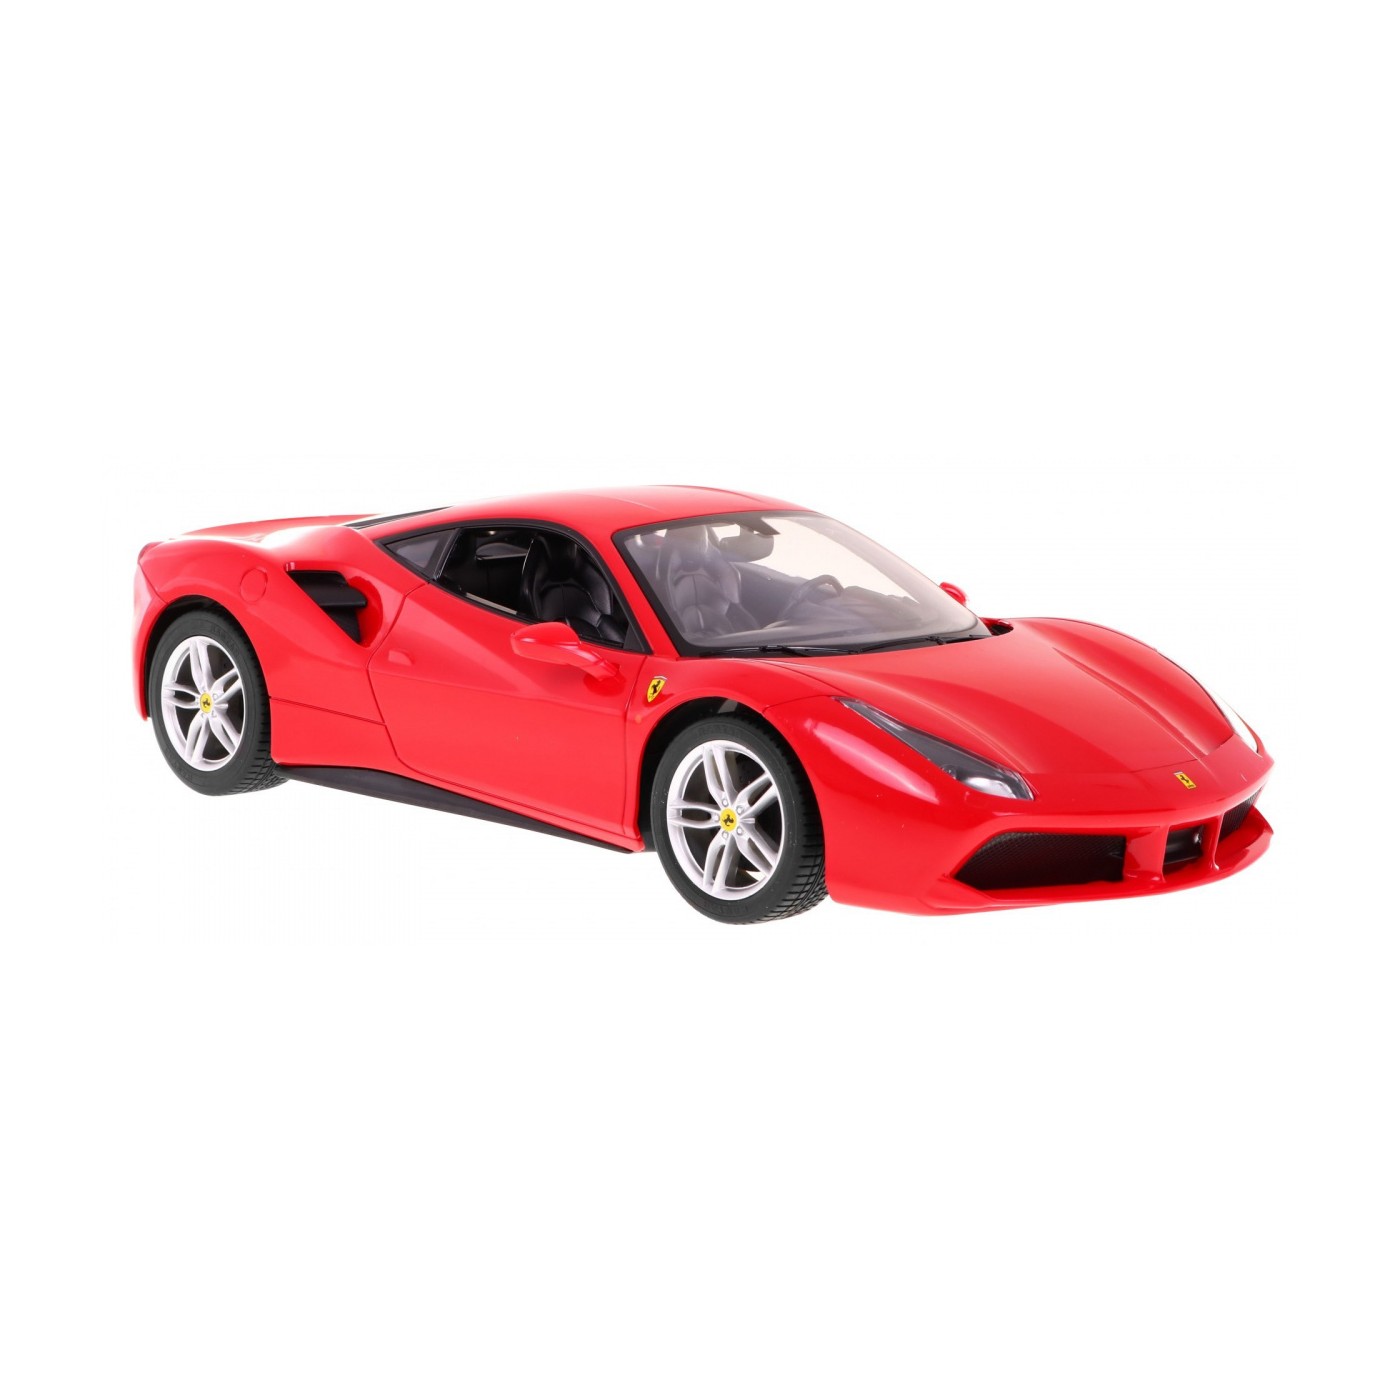 R C toy car Ferrari 488 GTB Red 1 14 RASTAR